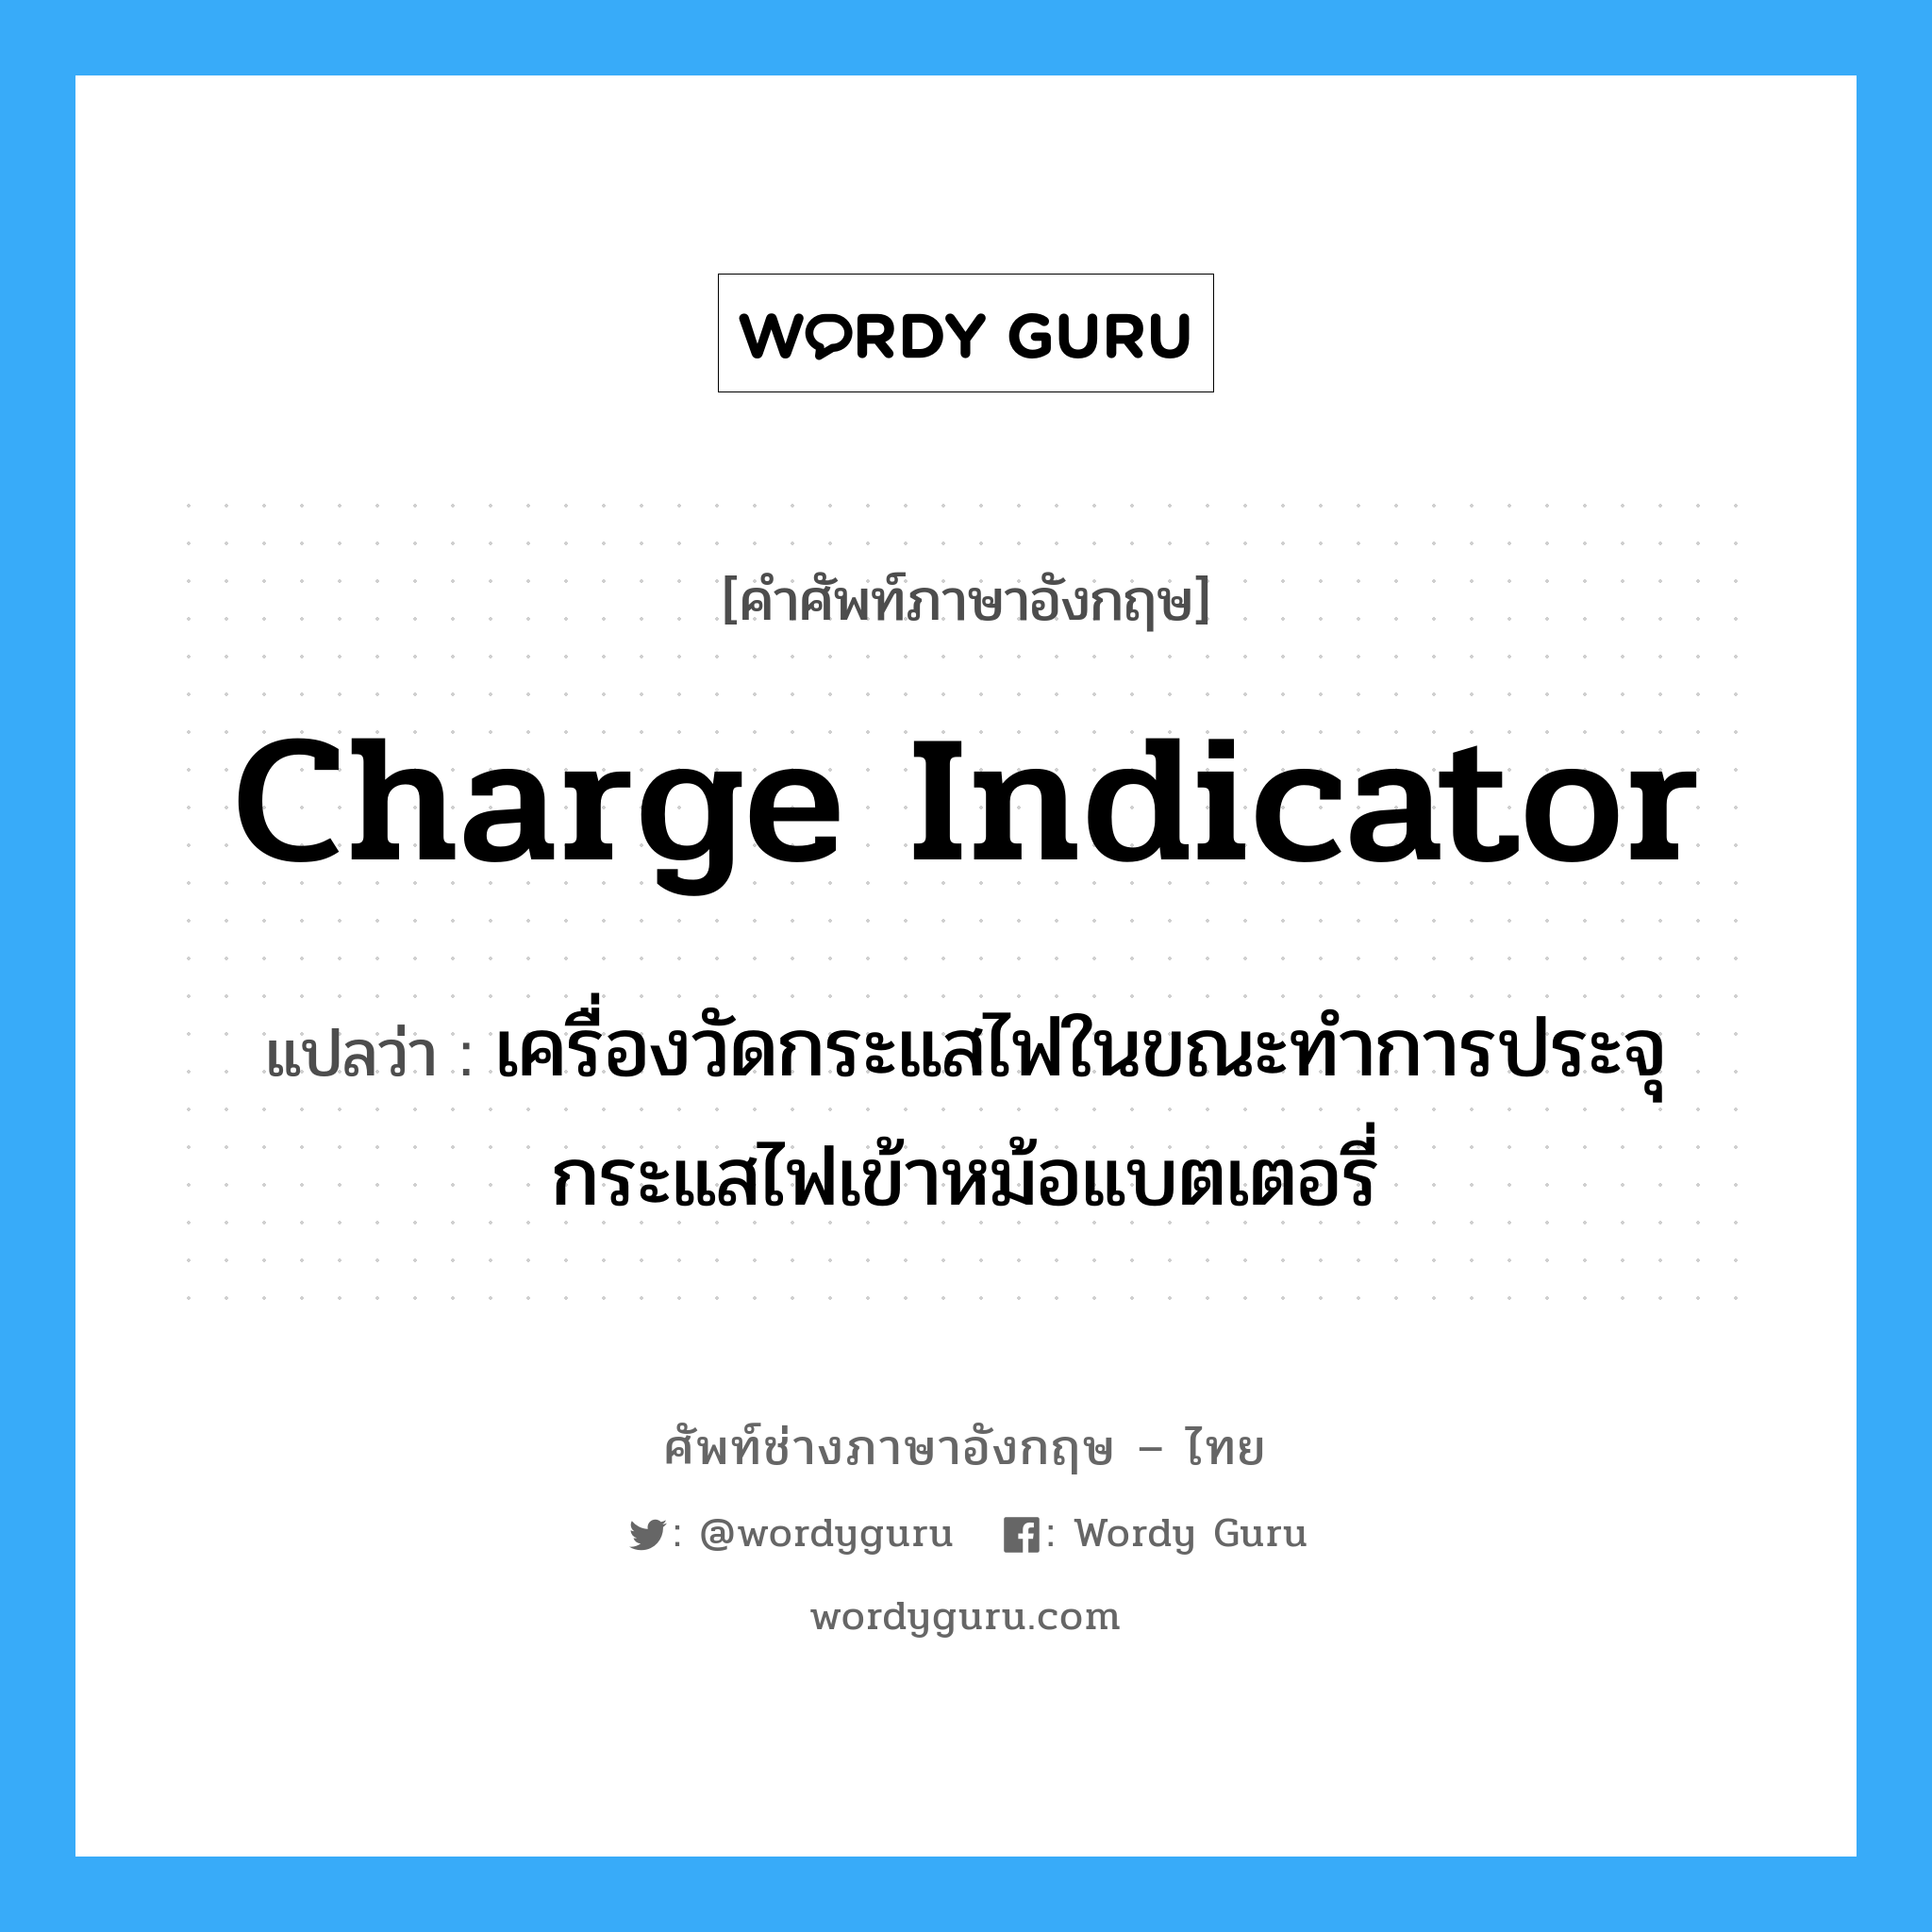 charge indicator แปลว่า?, คำศัพท์ช่างภาษาอังกฤษ - ไทย charge indicator คำศัพท์ภาษาอังกฤษ charge indicator แปลว่า เครื่องวัดกระแสไฟในขณะทำการประจุกระแสไฟเข้าหม้อแบตเตอรี่